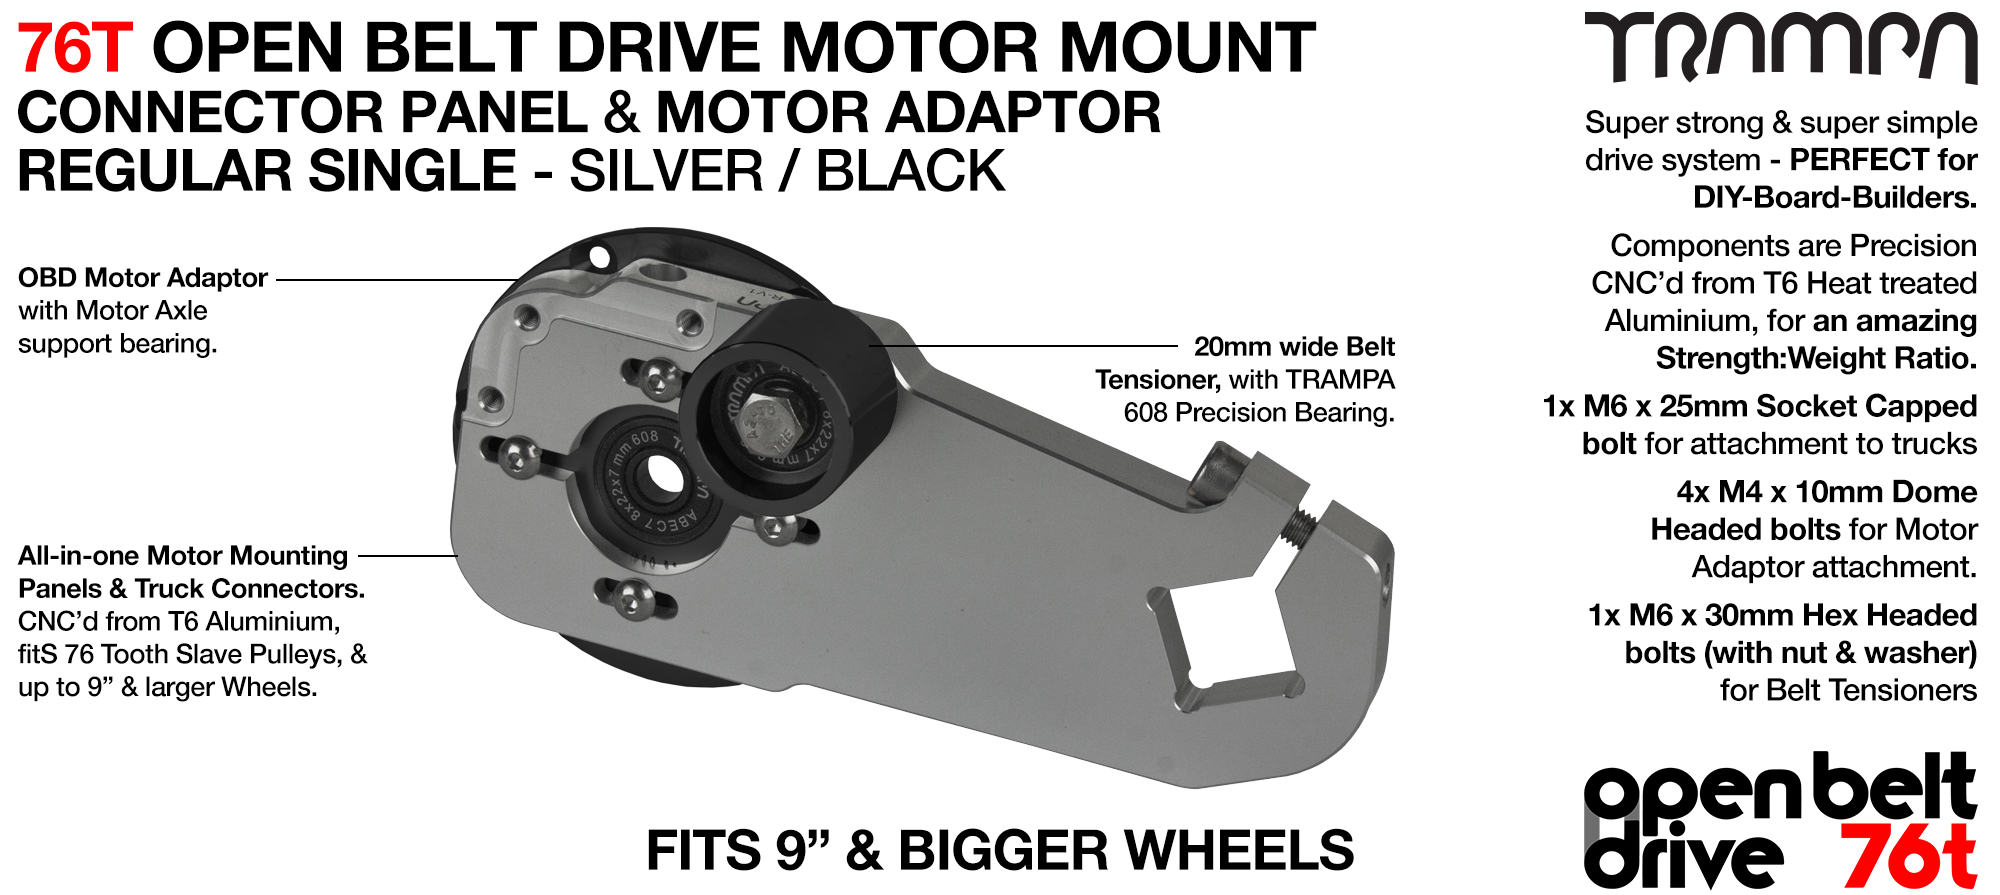 76T Open Belt Drive Motor Mount & Motor Adaptor - SINGLE SILVER